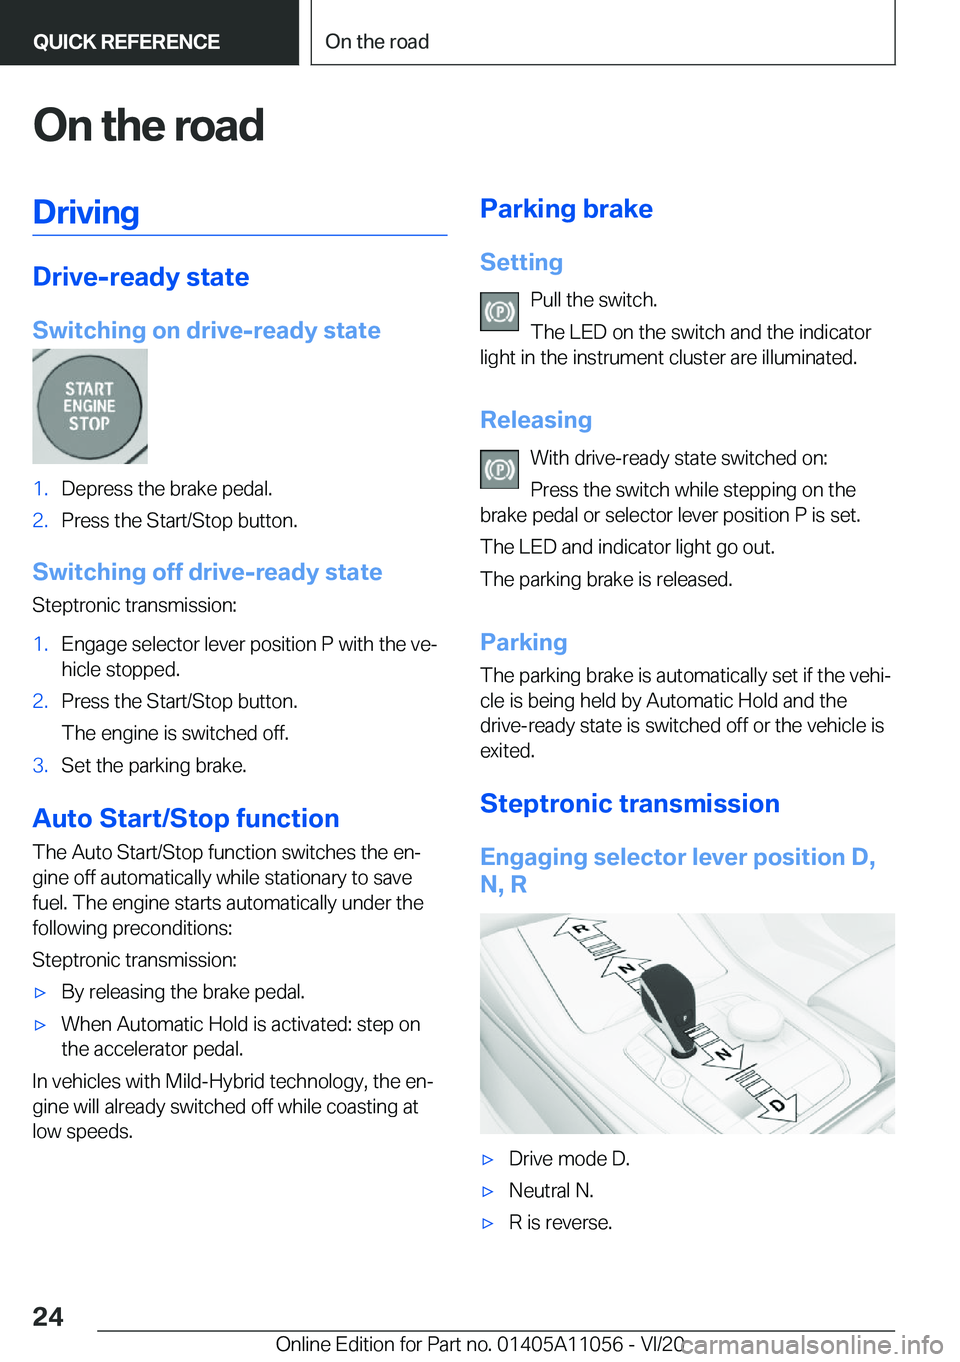 BMW X7 2021 Owners Manual �O�n��t�h�e��r�o�a�d�D�r�i�v�i�n�g
�D�r�i�v�e�-�r�e�a�d�y��s�t�a�t�e
�S�w�i�t�c�h�i�n�g��o�n��d�r�i�v�e�-�r�e�a�d�y��s�t�a�t�e
�1�.�D�e�p�r�e�s�s��t�h�e��b�r�a�k�e��p�e�d�a�l�.�2�.�P�r�e�s�s�